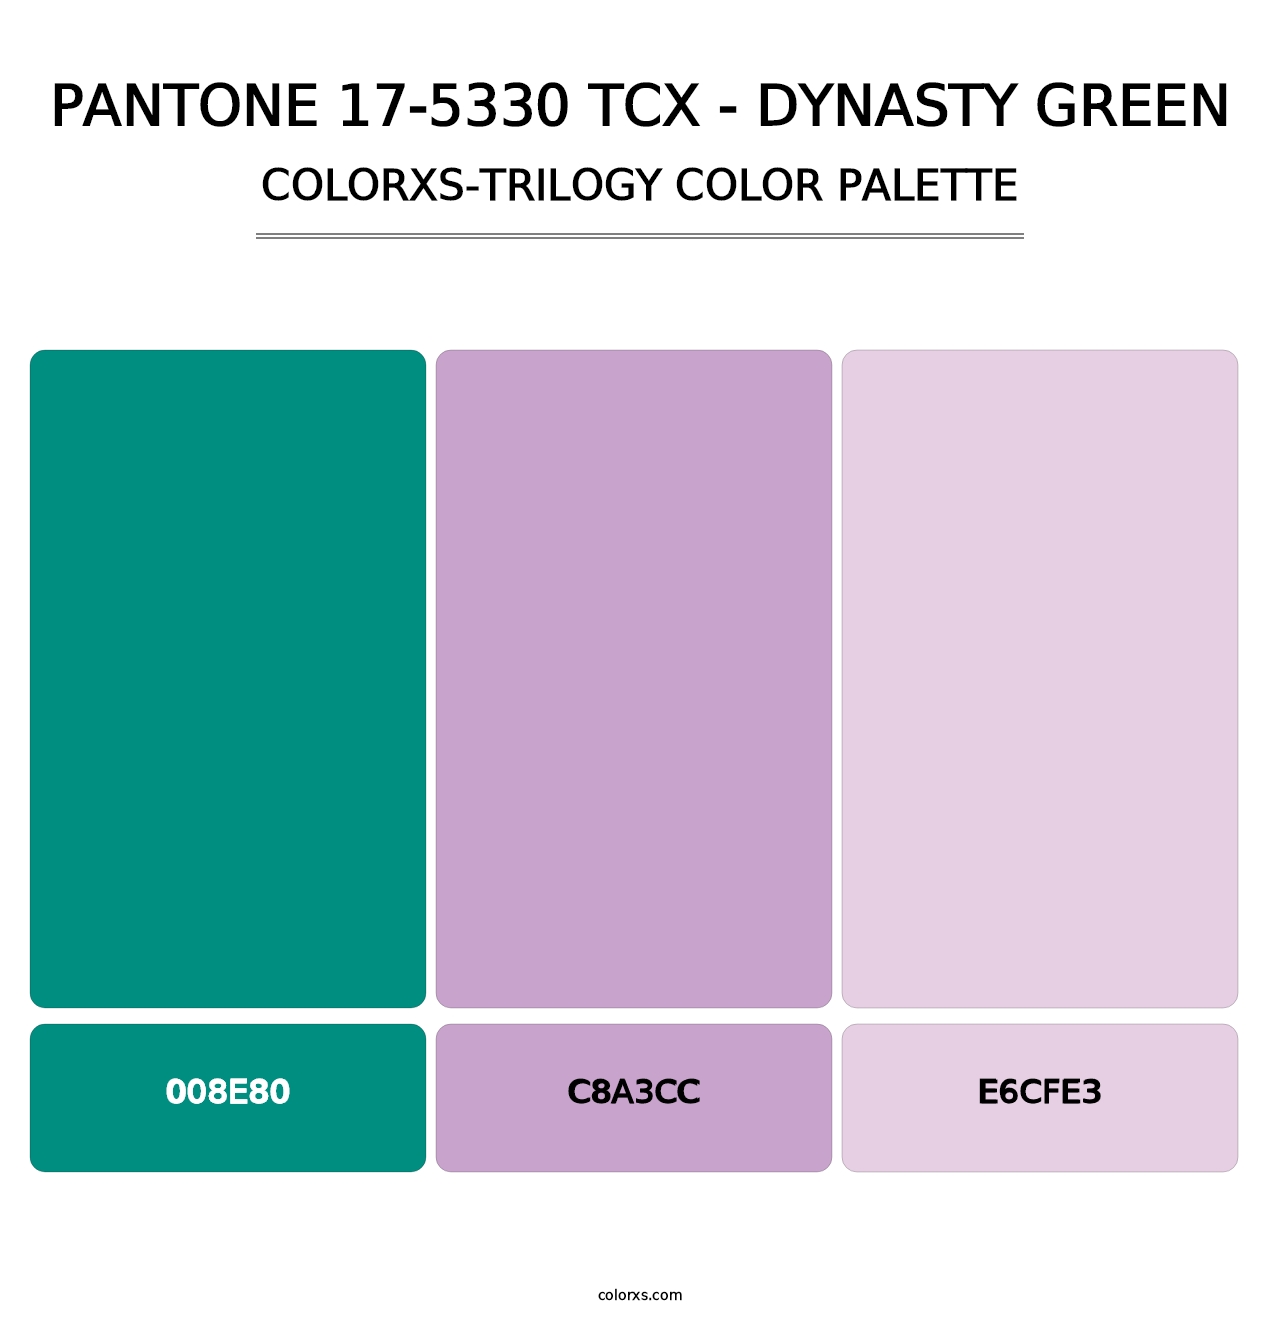 PANTONE 17-5330 TCX - Dynasty Green - Colorxs Trilogy Palette